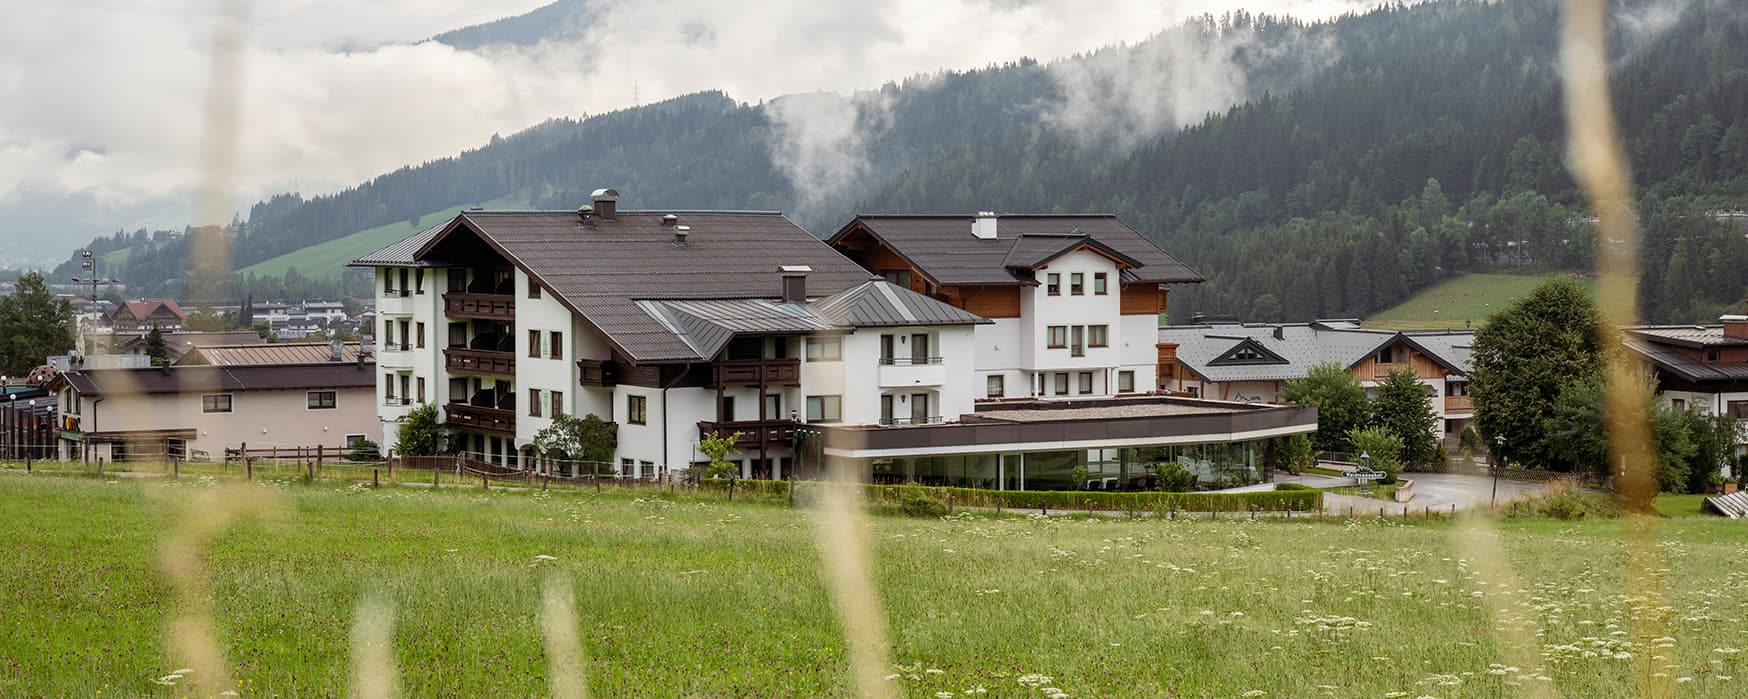 Blick von der Sommerwiese zum Hotel Waidmannsheil in Flachau